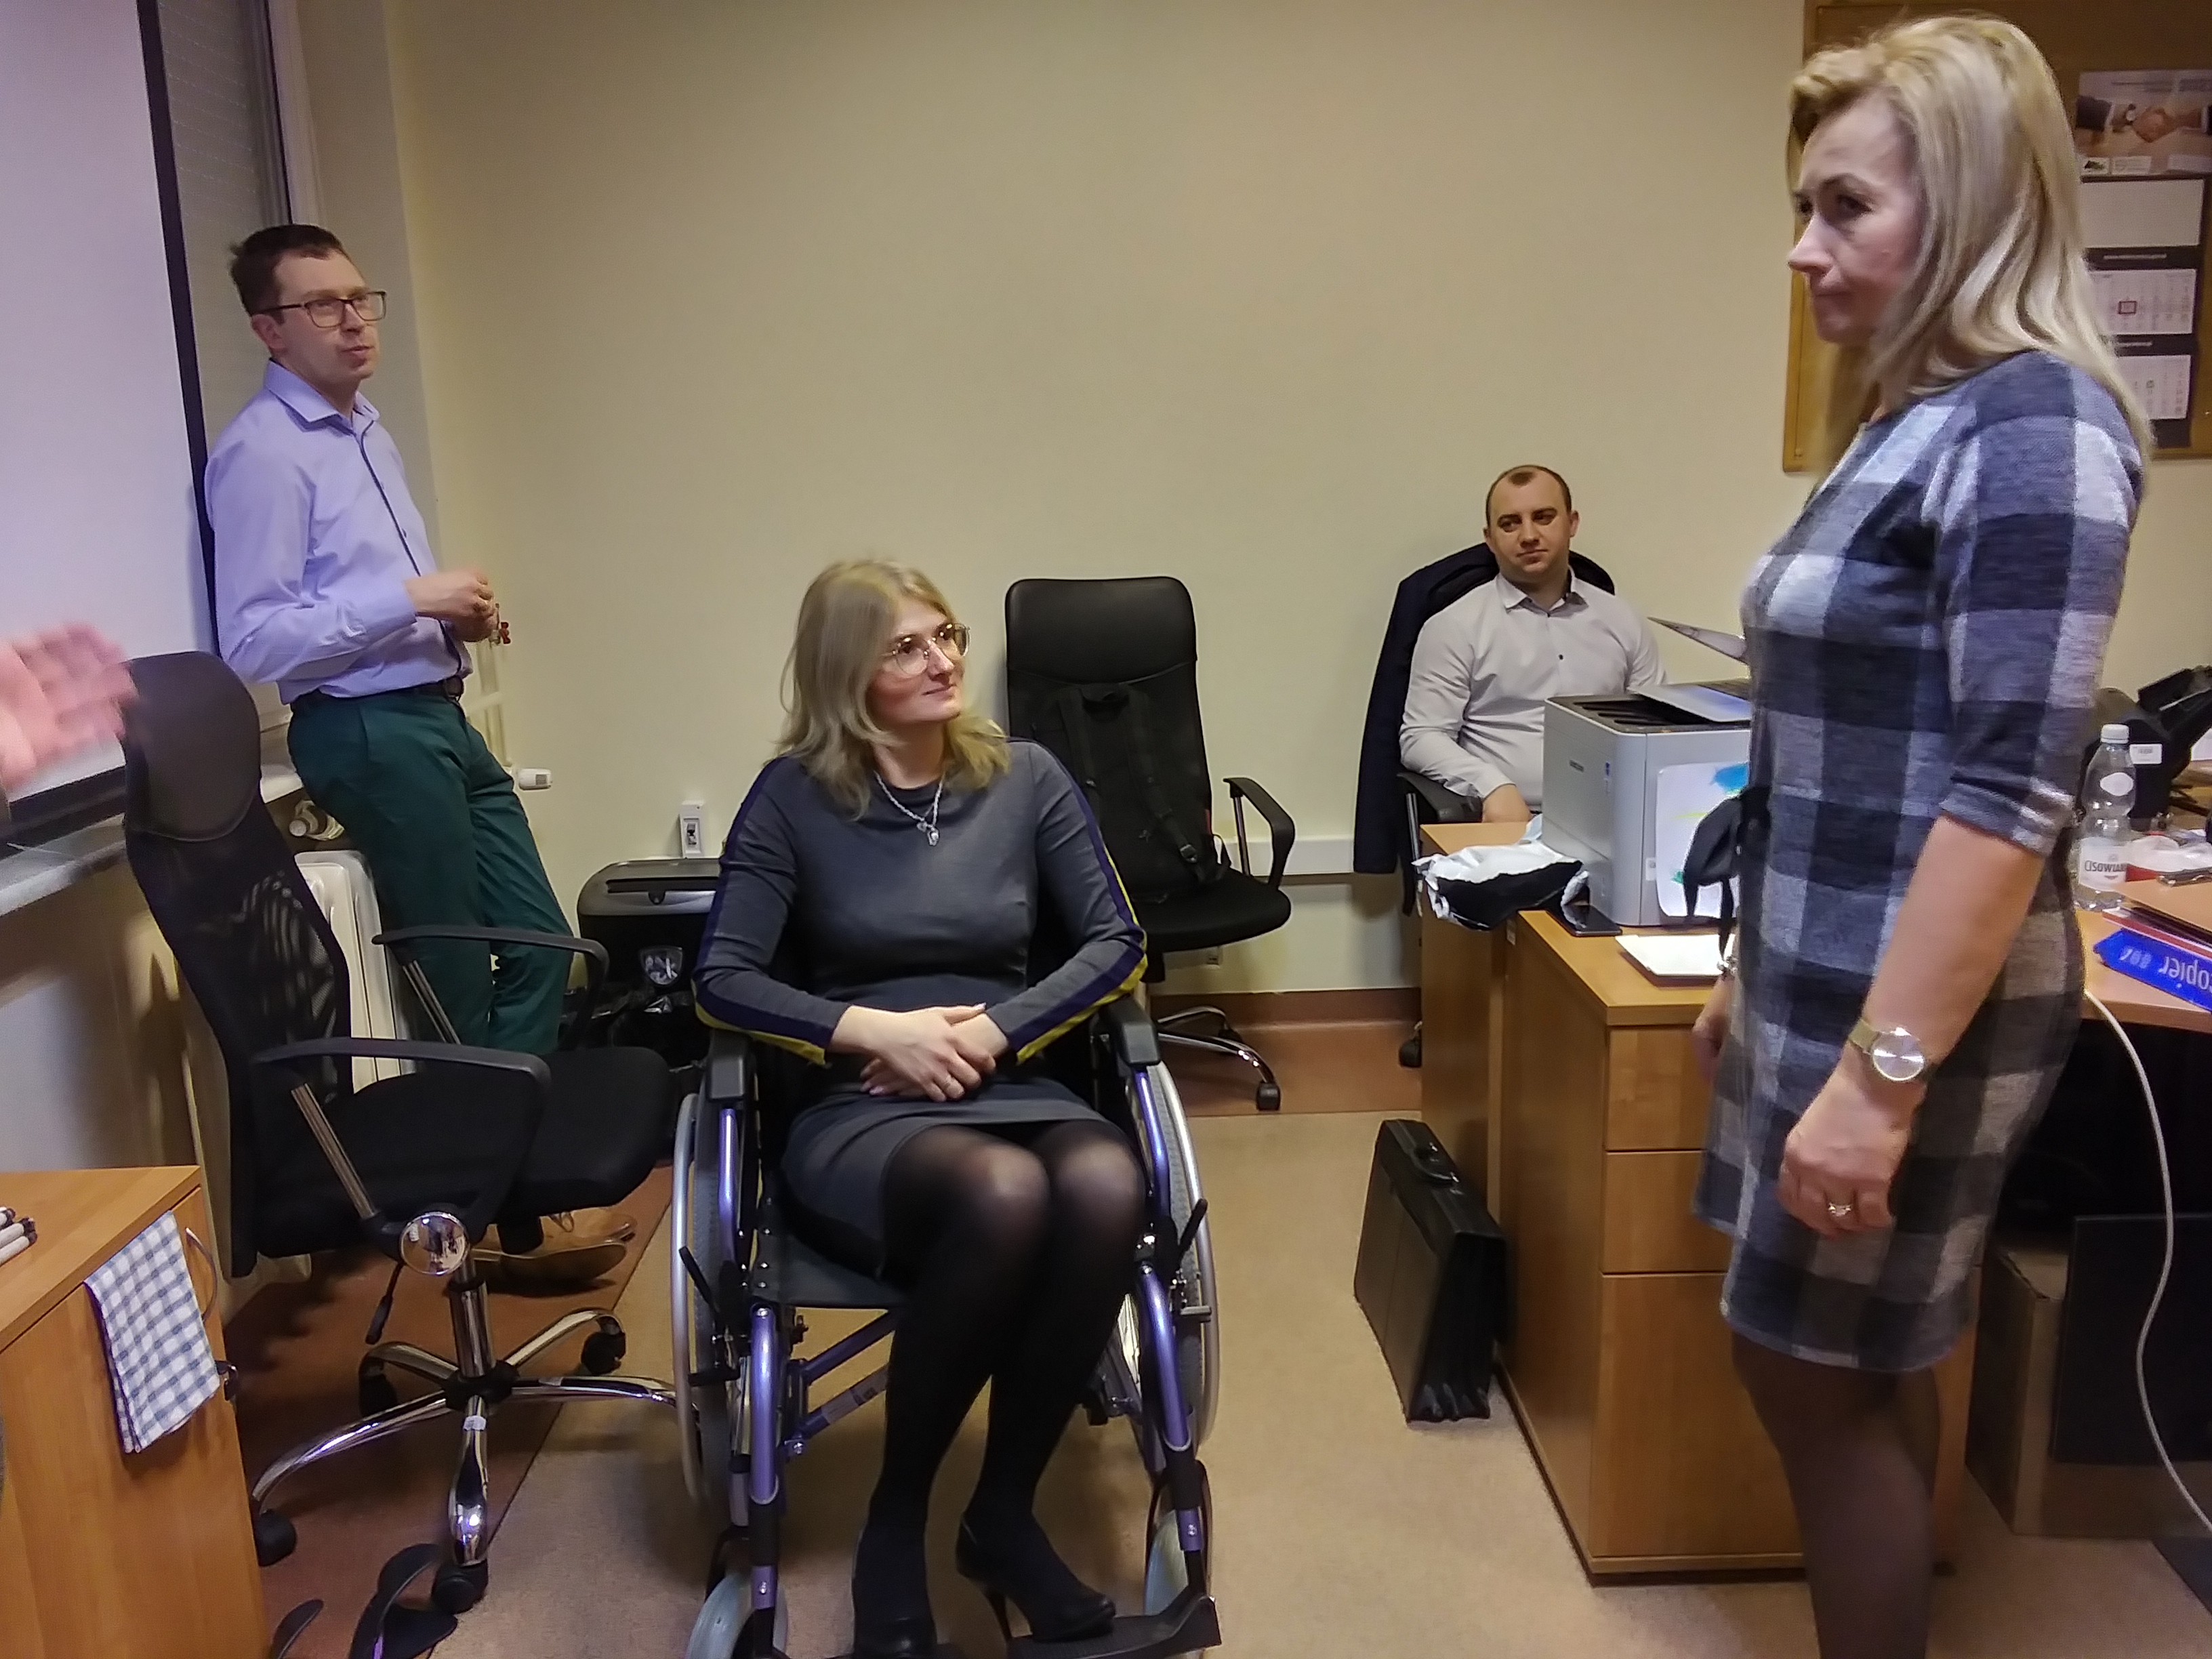 Zdjęcie przedstawia symulację niepełnosprawności ruchowej - pracownica PUP siedzi na wózku, obok niej widoczni są również inni uczestnicy szkolenia.